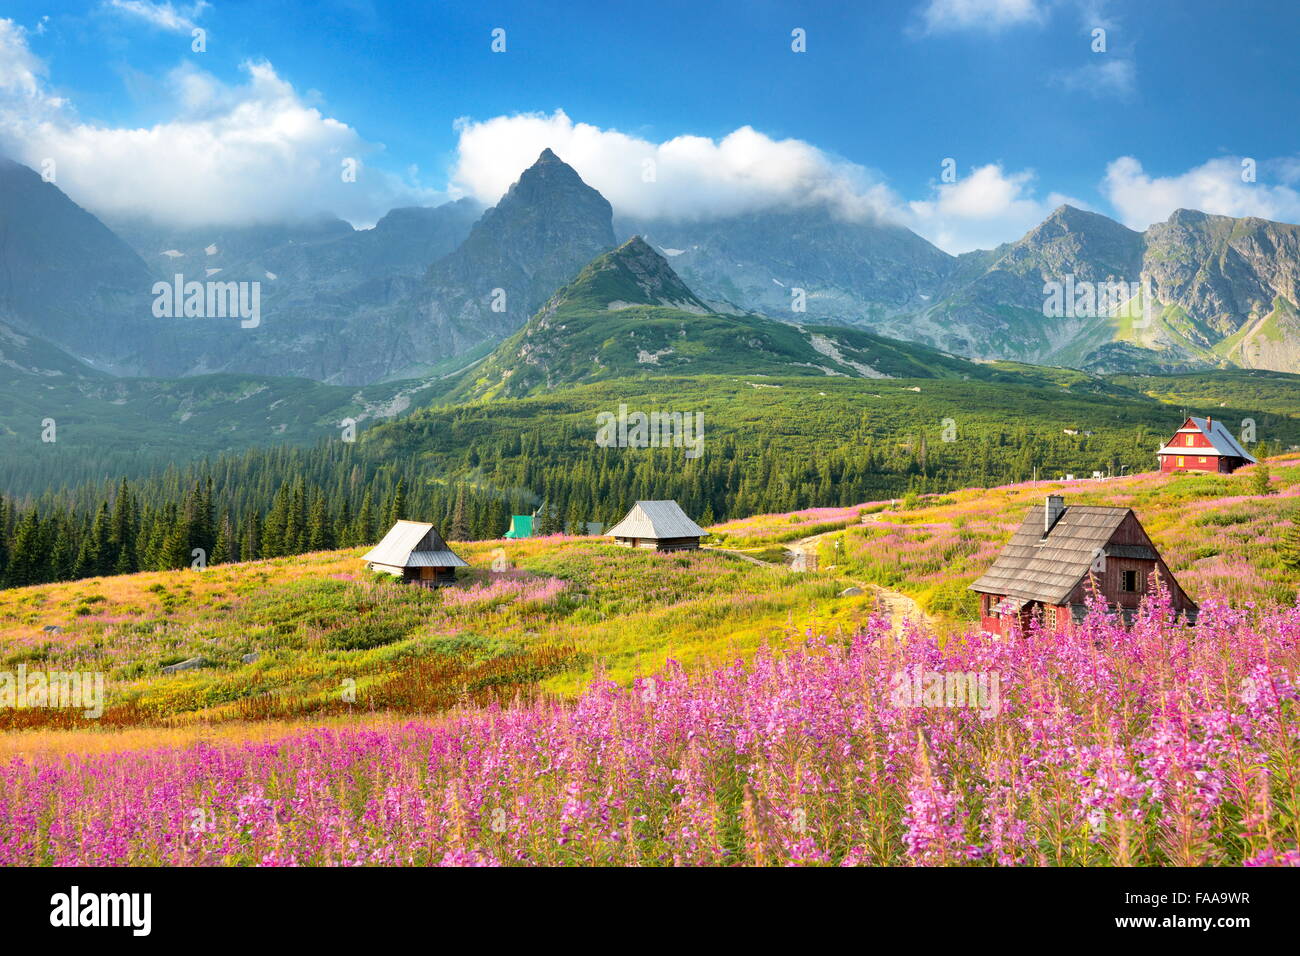 Gasienicowa Valley, Tatra Mountains, Polan Stock Photo